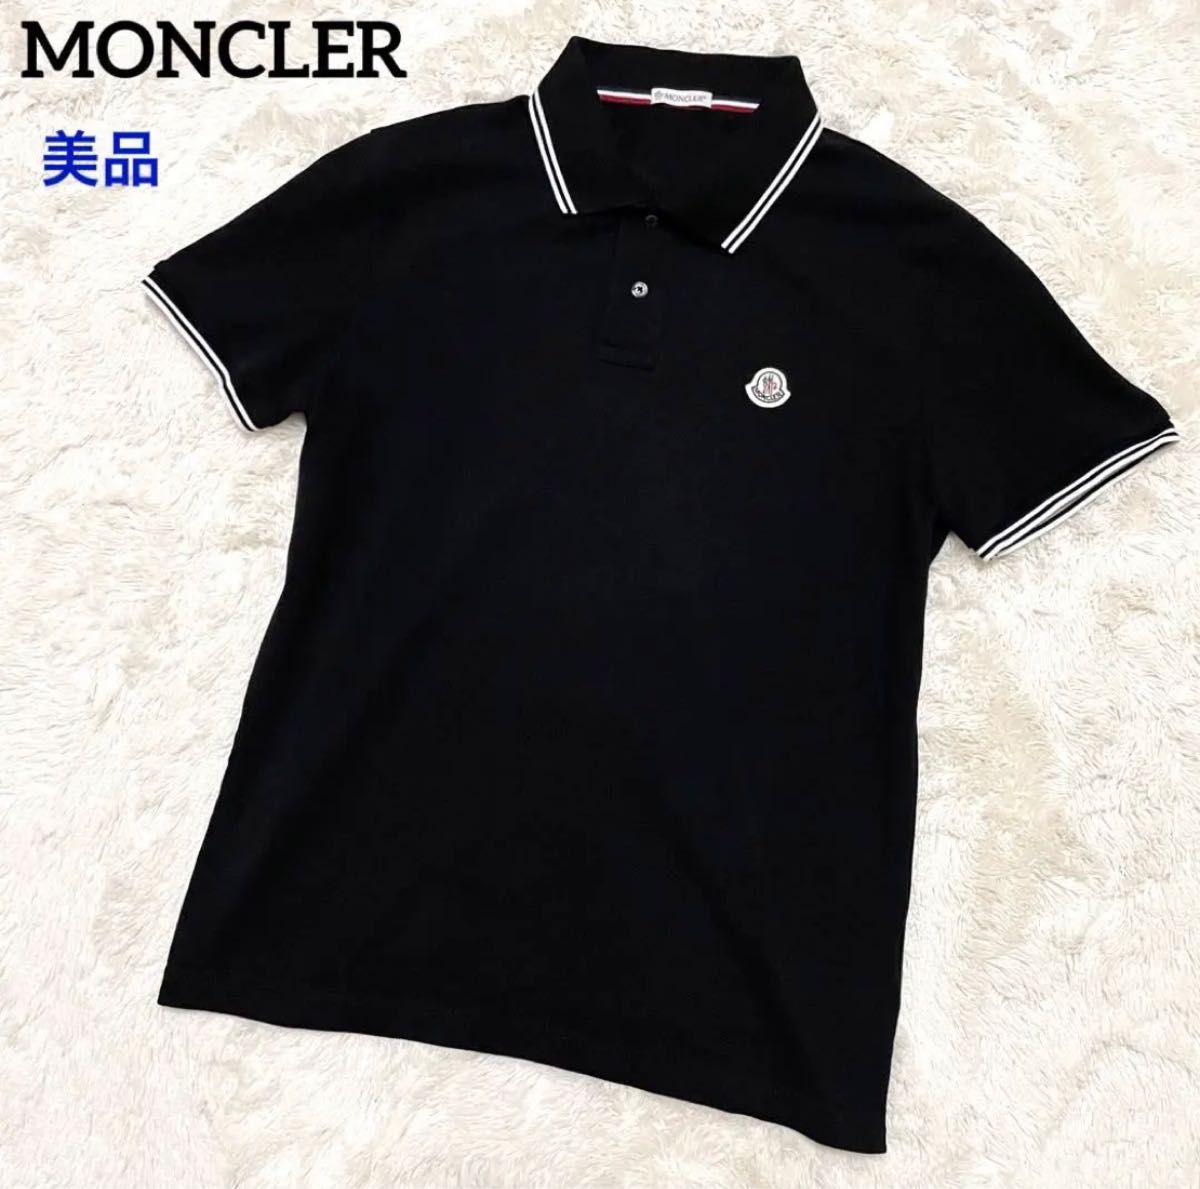 MONCLER 半袖ポロシャツ Lサイズ 黒色 ブラック モンクレールジャパン